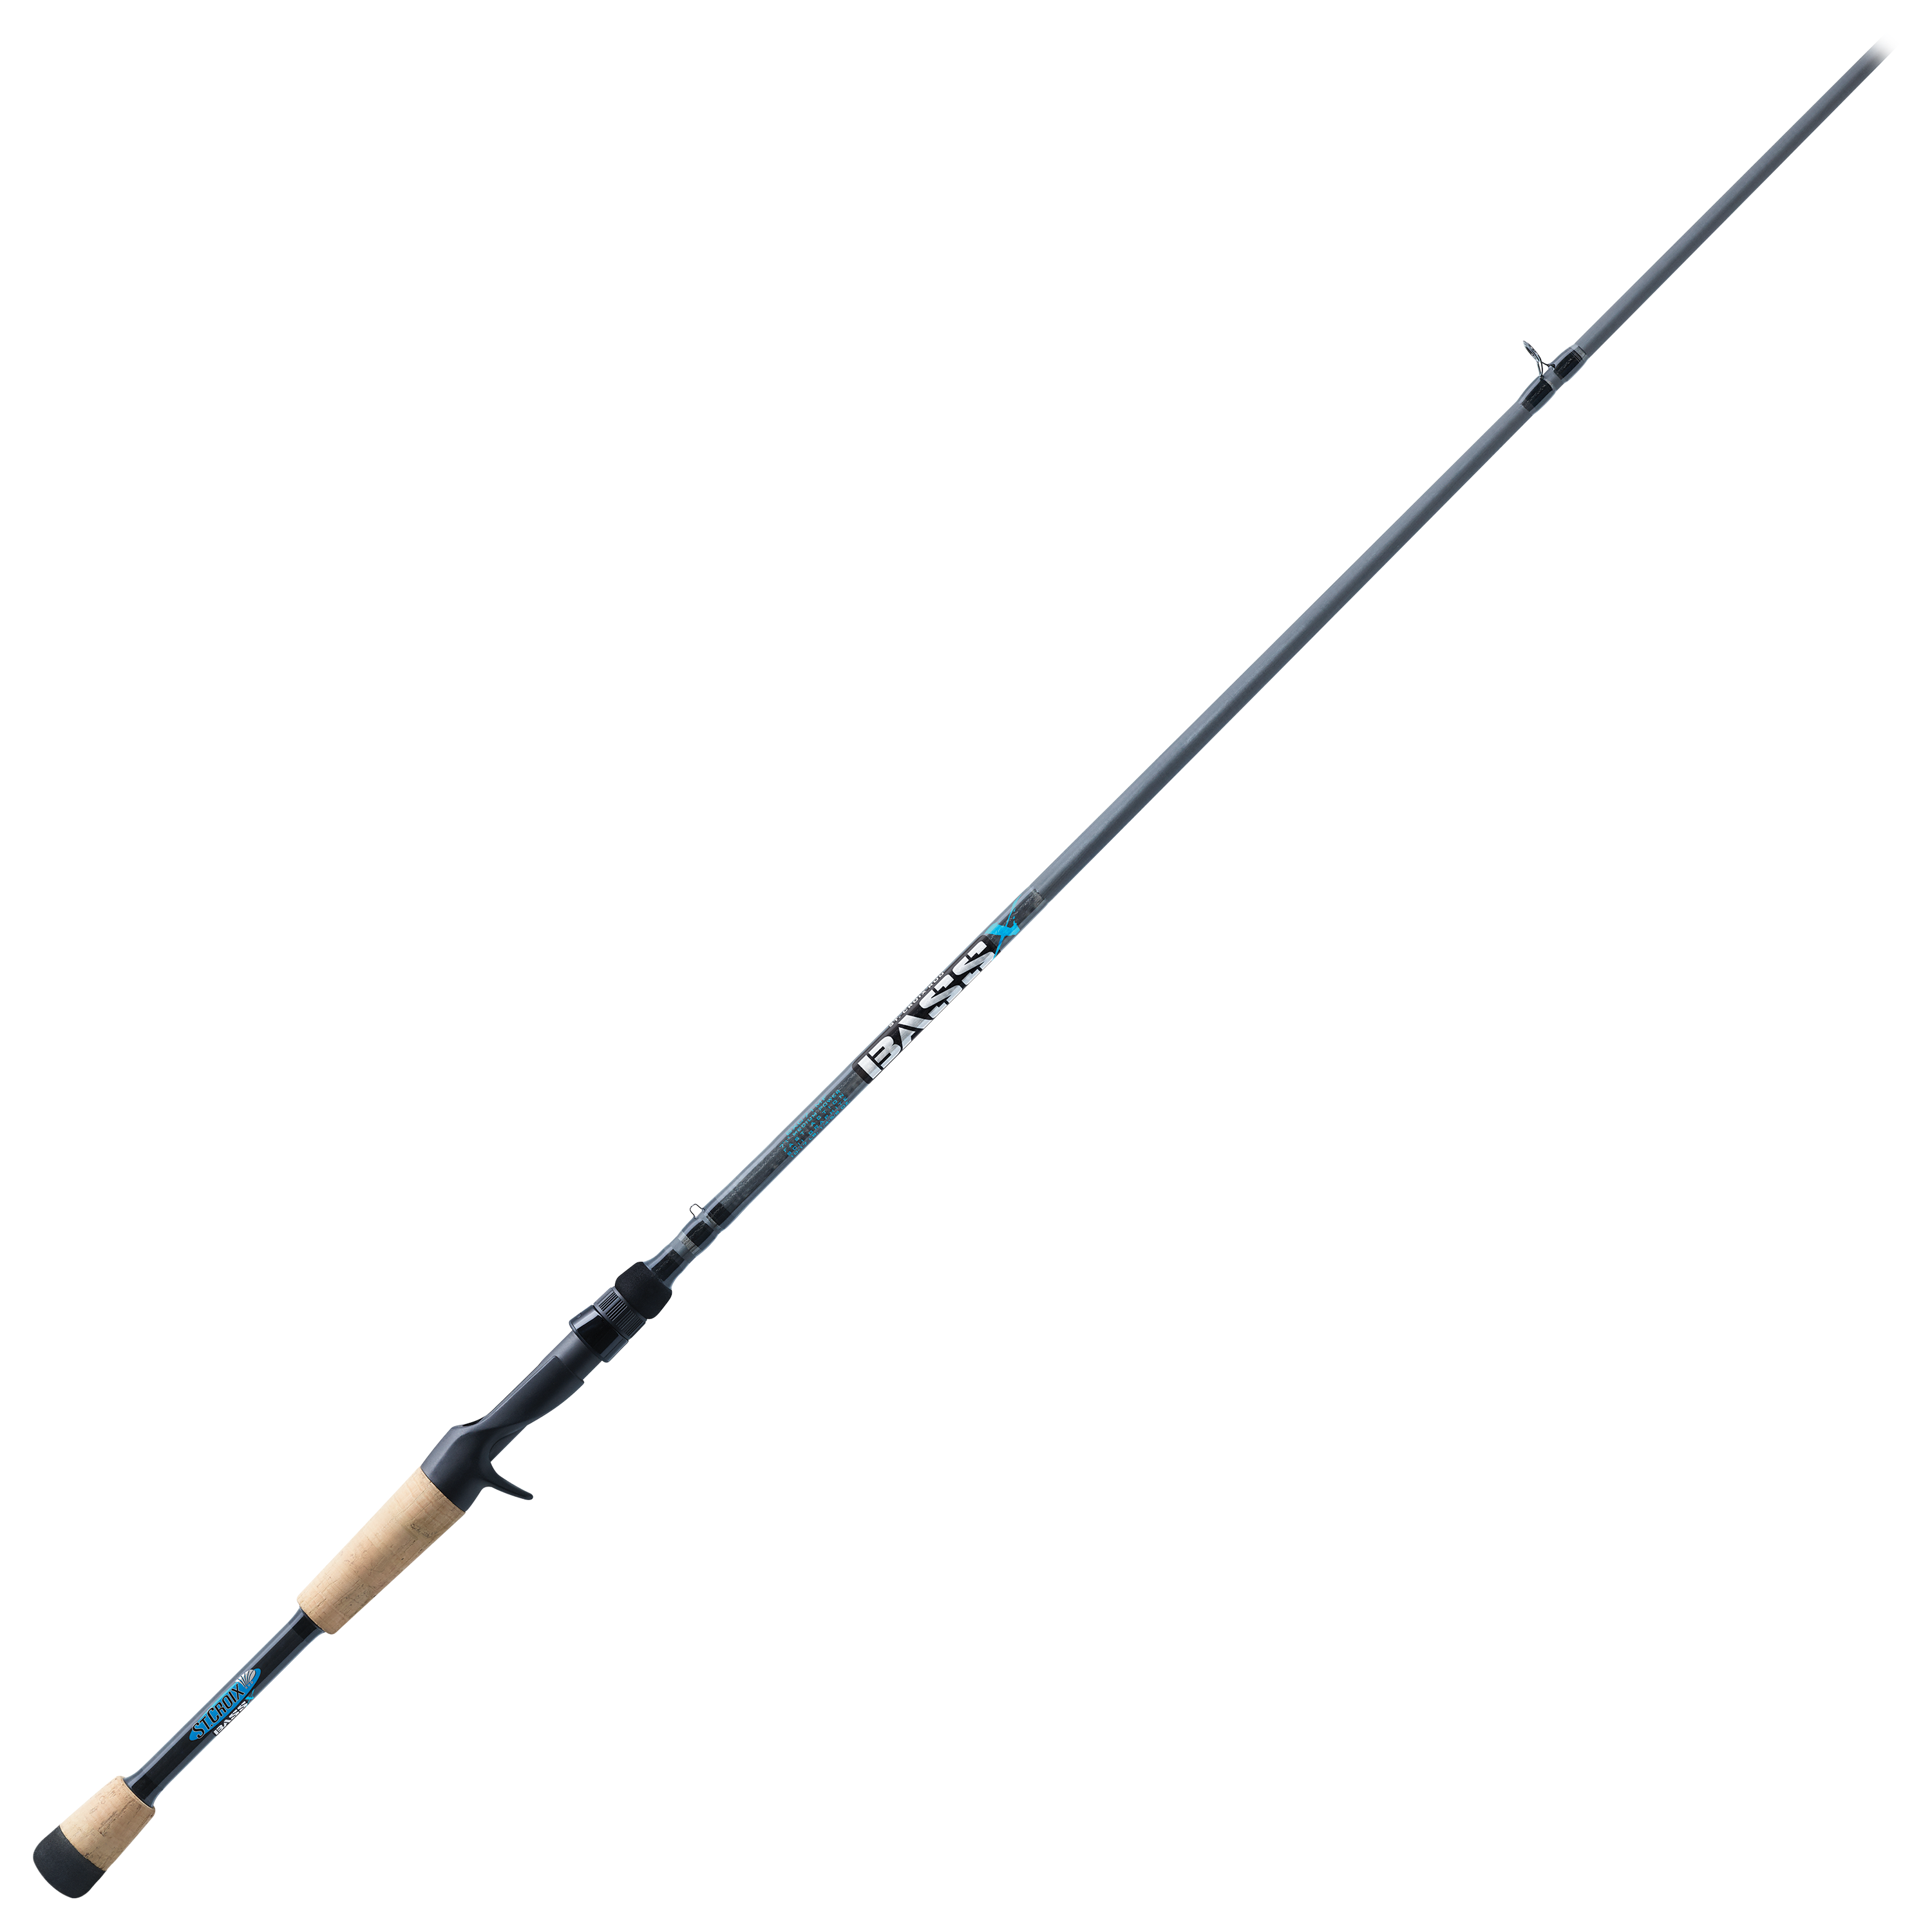 St. Croix Bass X Casting Rod - BXC71MF